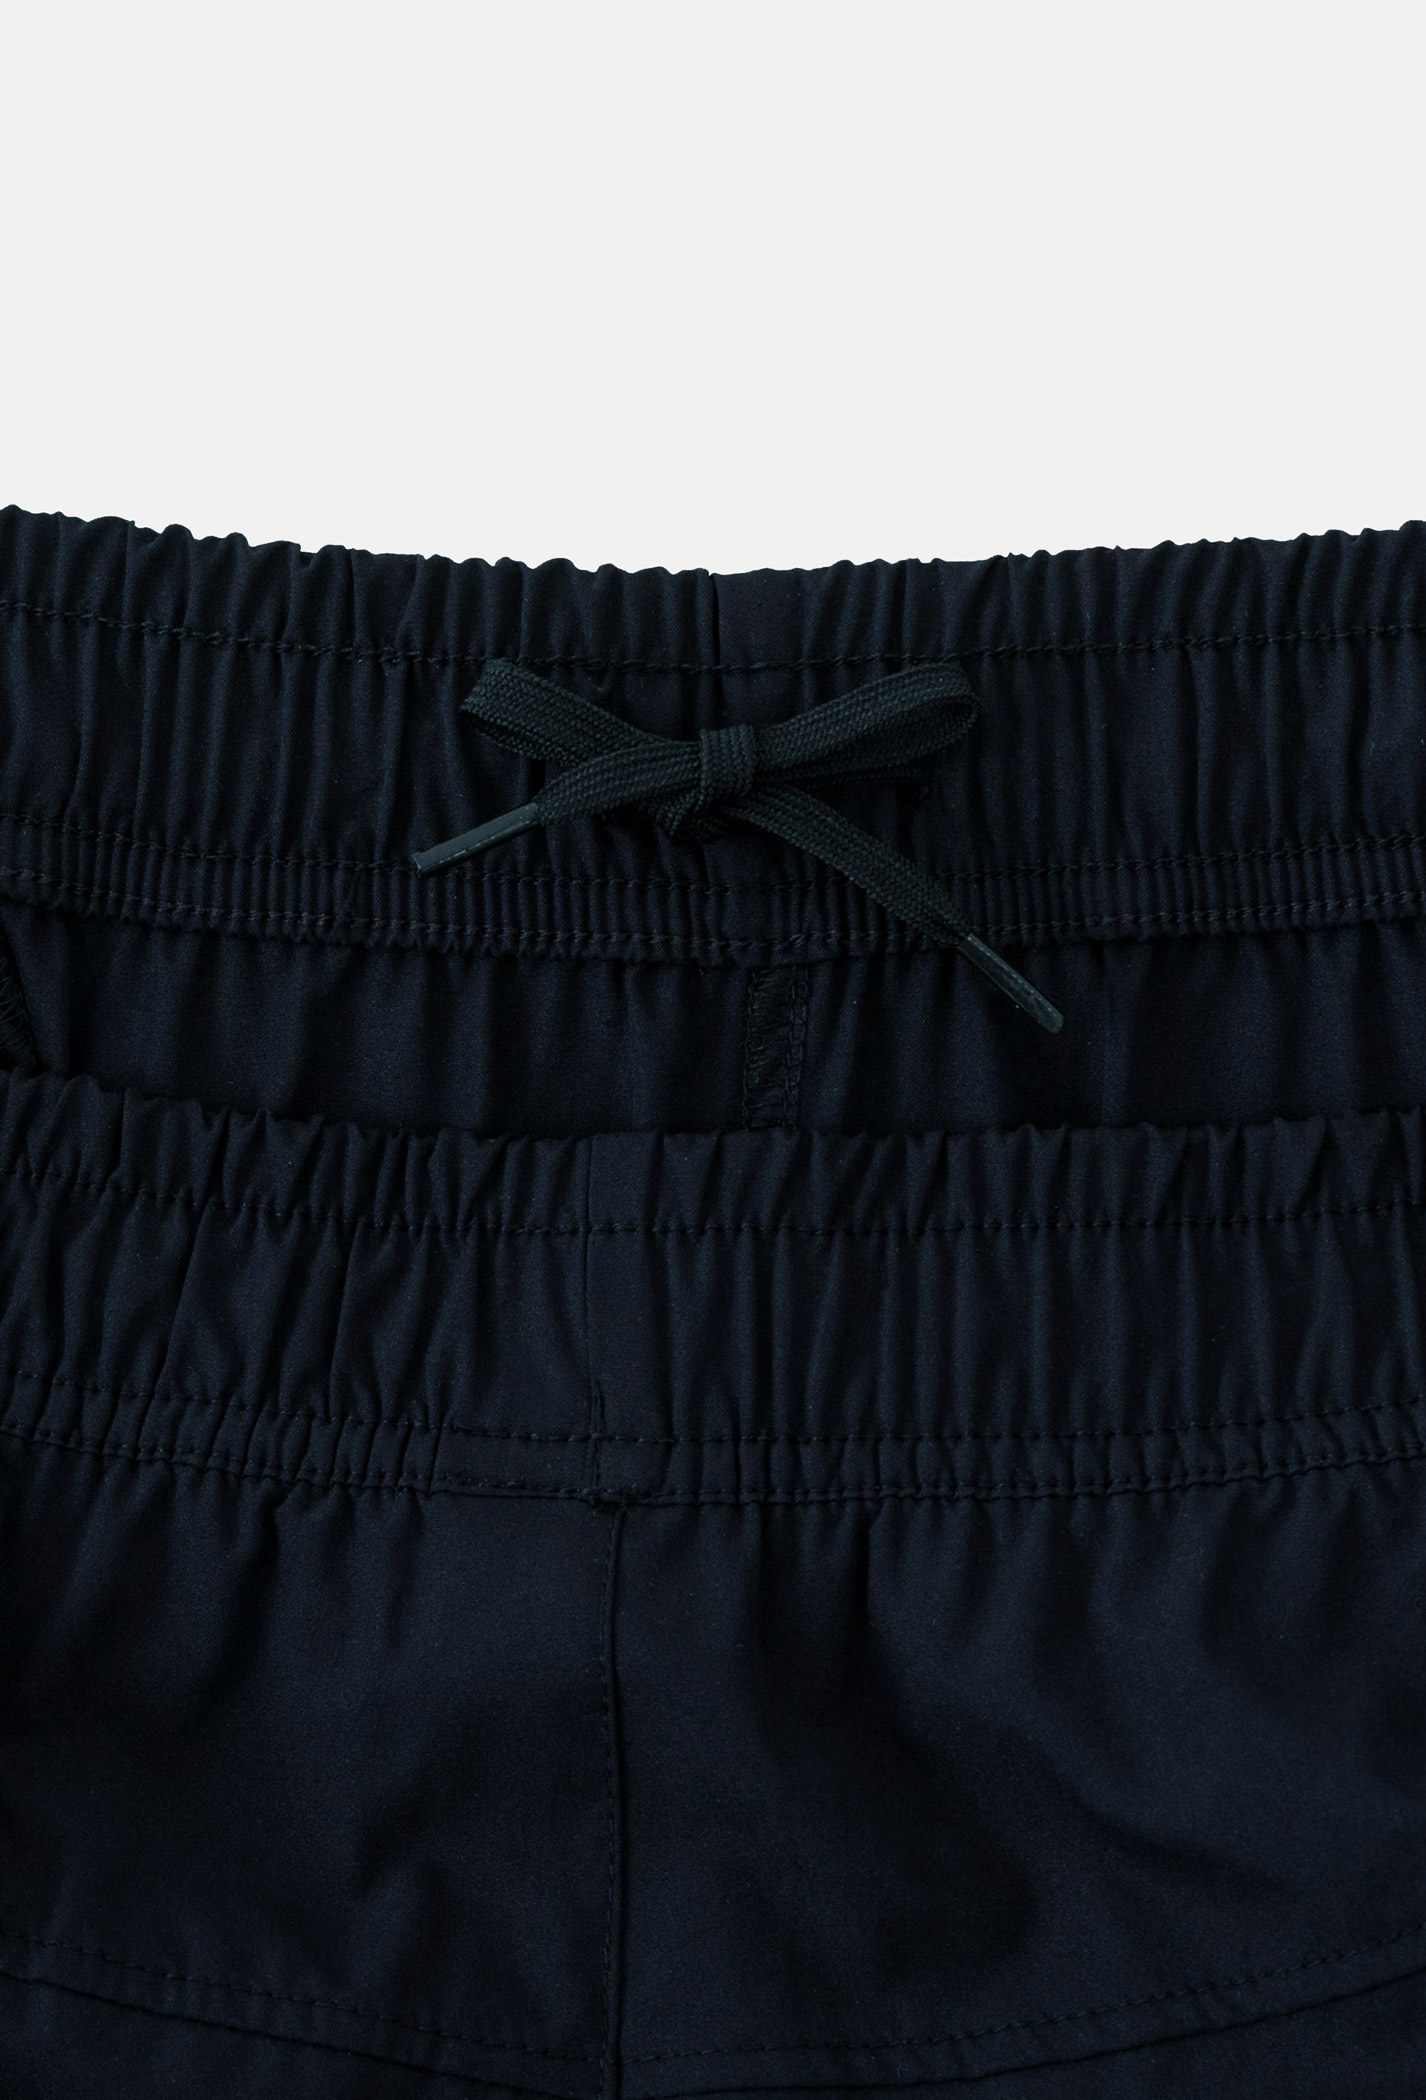 Quần nam Daily Shorts - sợi Sorona, nhuộm Cleandye xanh-navy 3